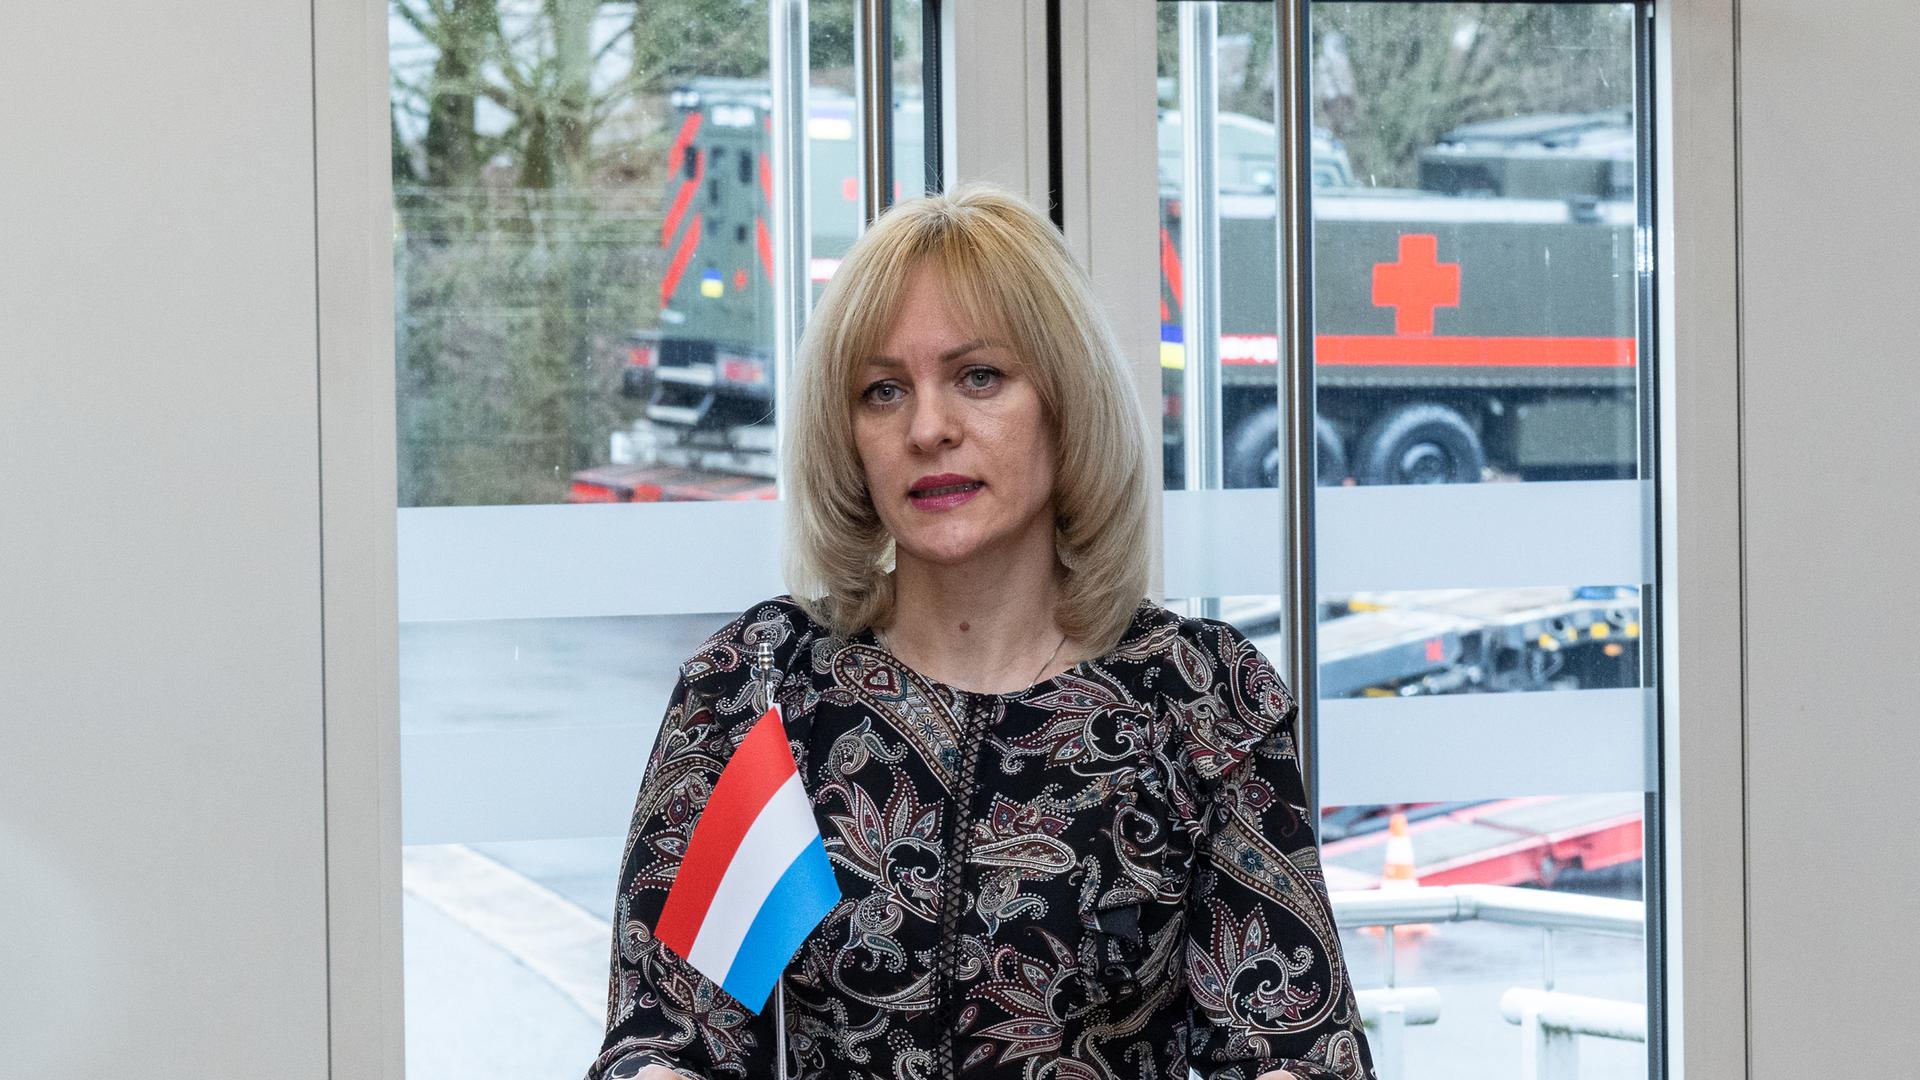 La chargée d'affaires de l'ambassade ukrainienne à Bruxelles, Natalia Anoshyna, remercie le Luxembourg pour l'aide apportée à son pays.